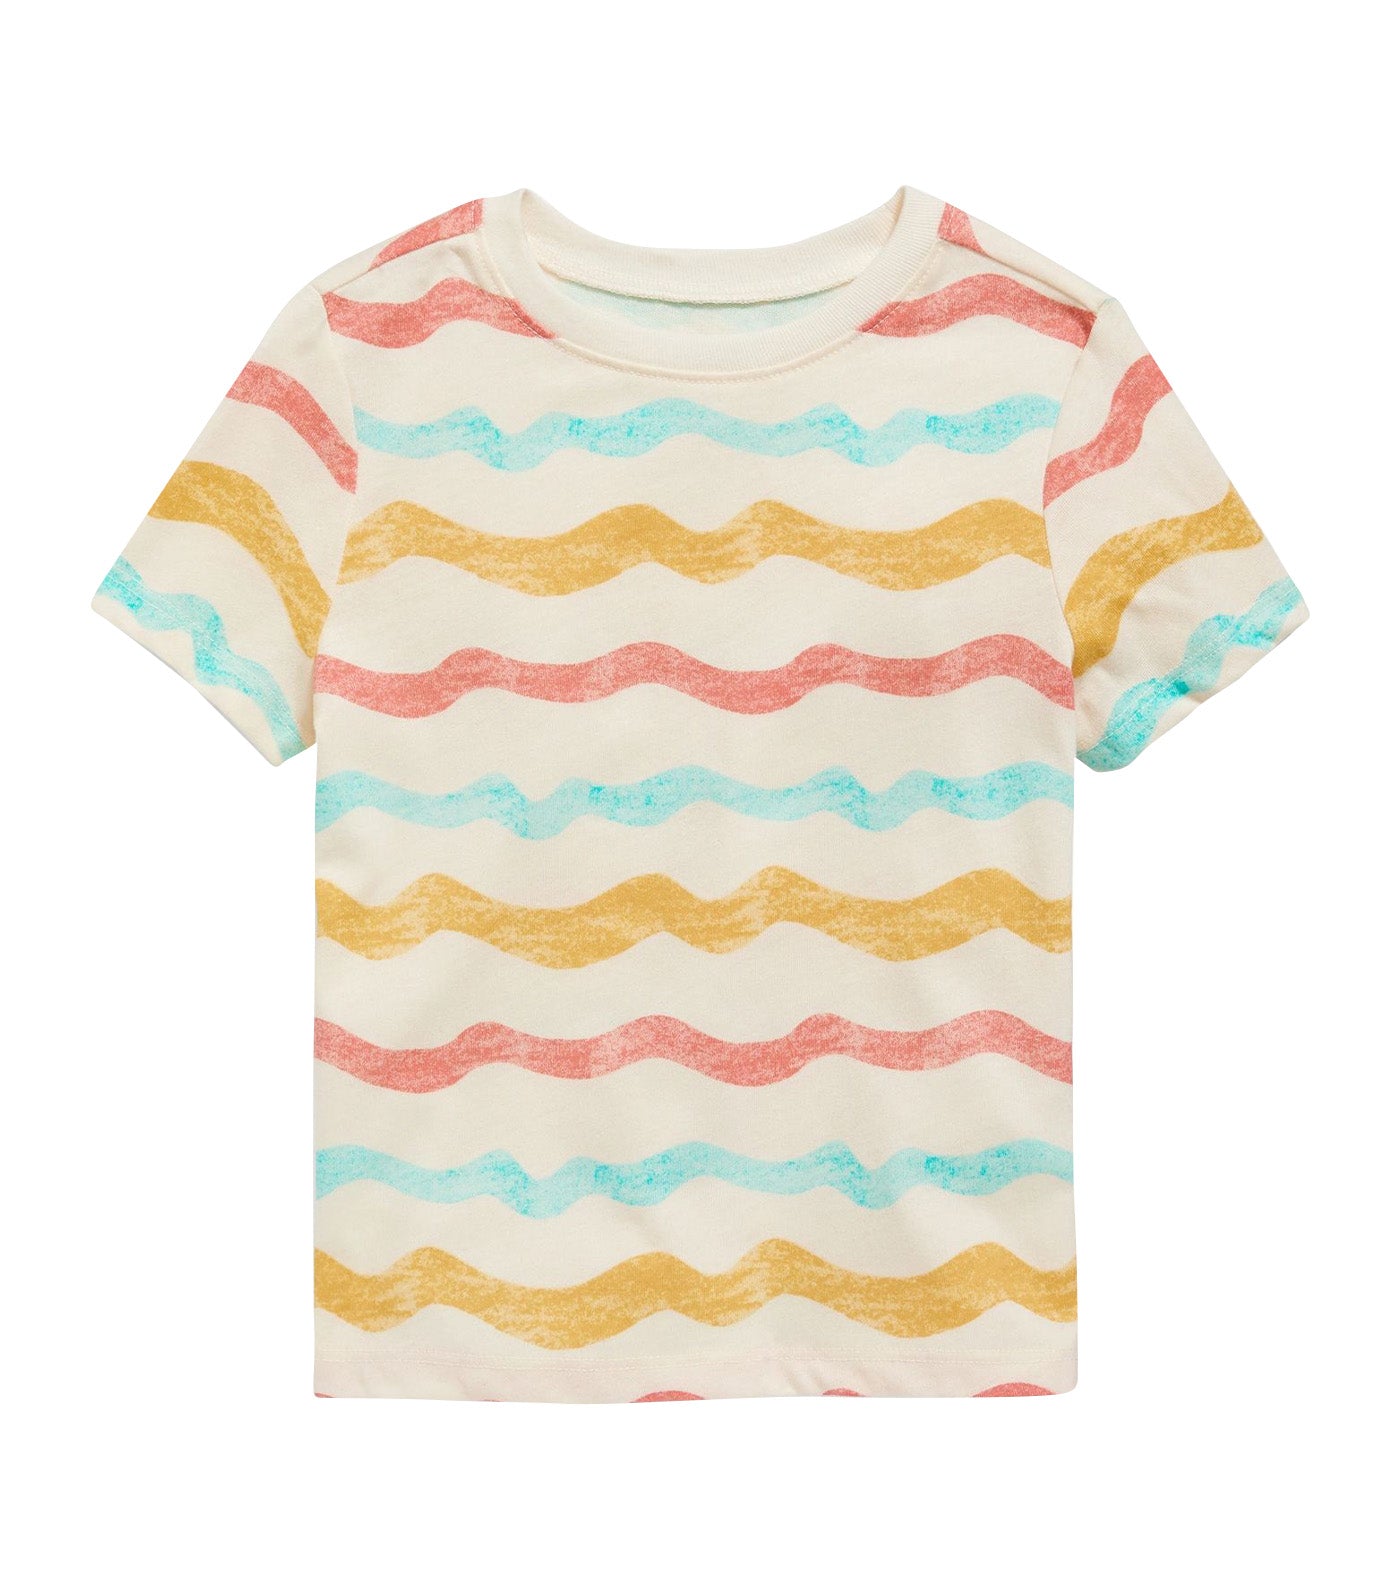 Unisex Short-Sleeve Printed T-Shirt for Toddler - Multi-Stripe